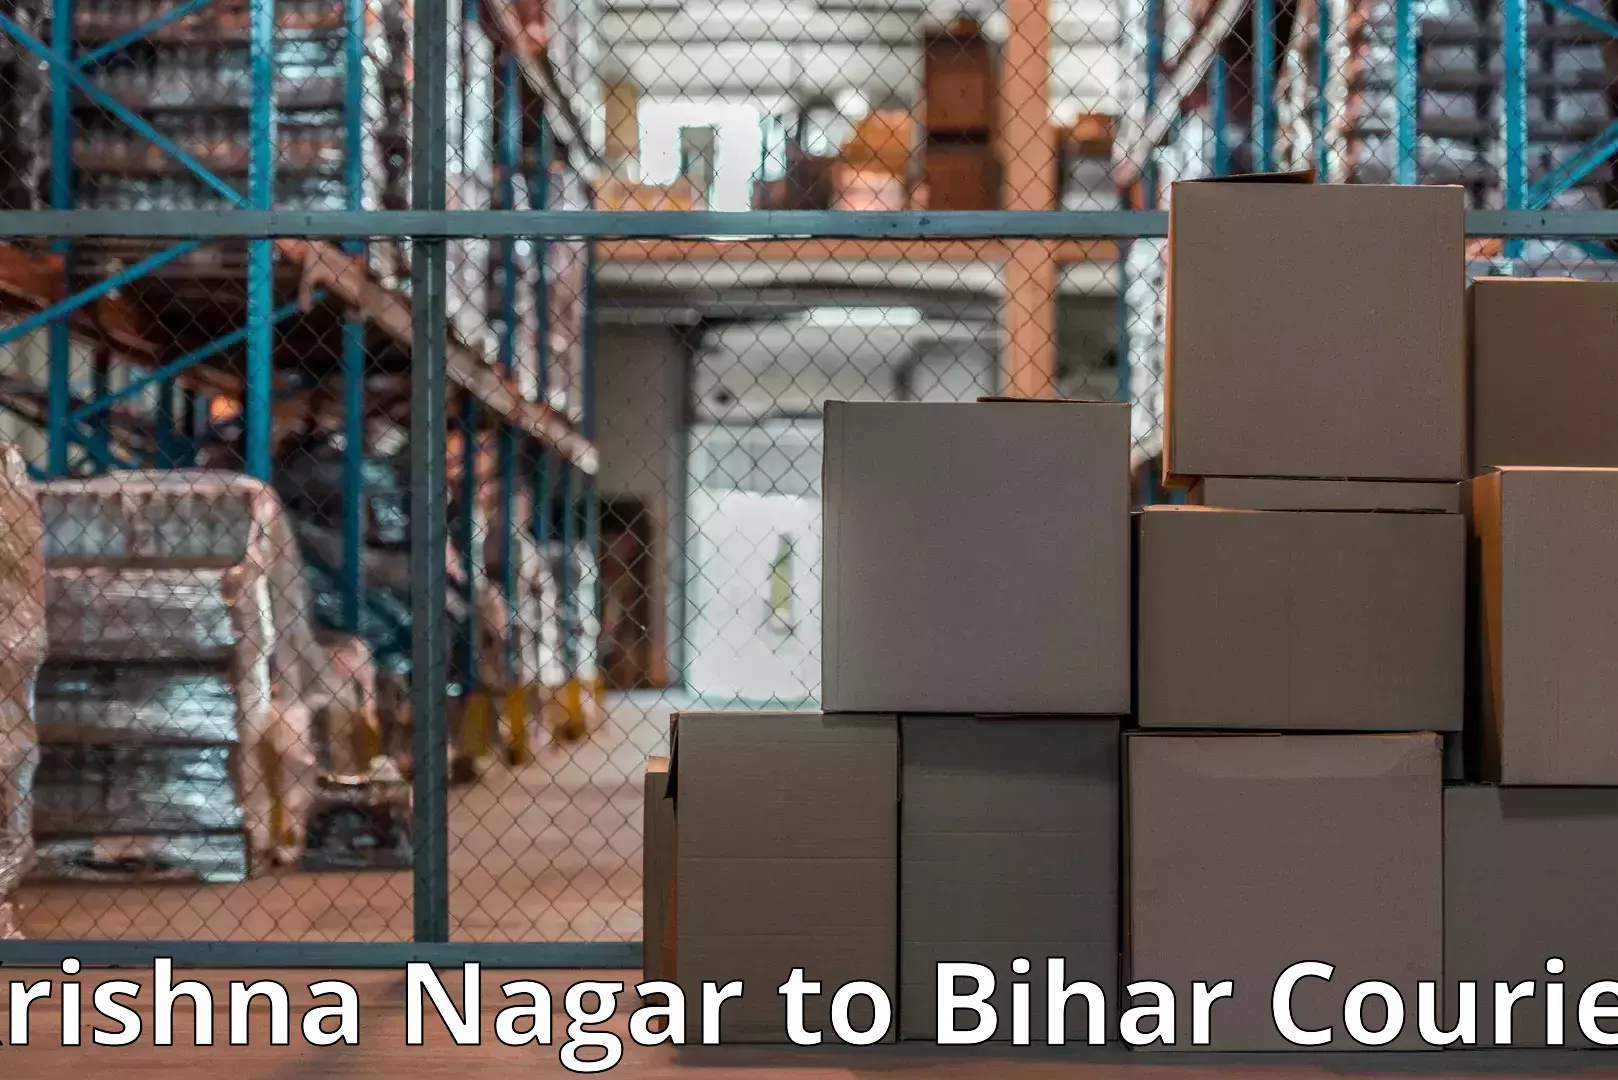 Efficient moving company in Krishna Nagar to Madhubani